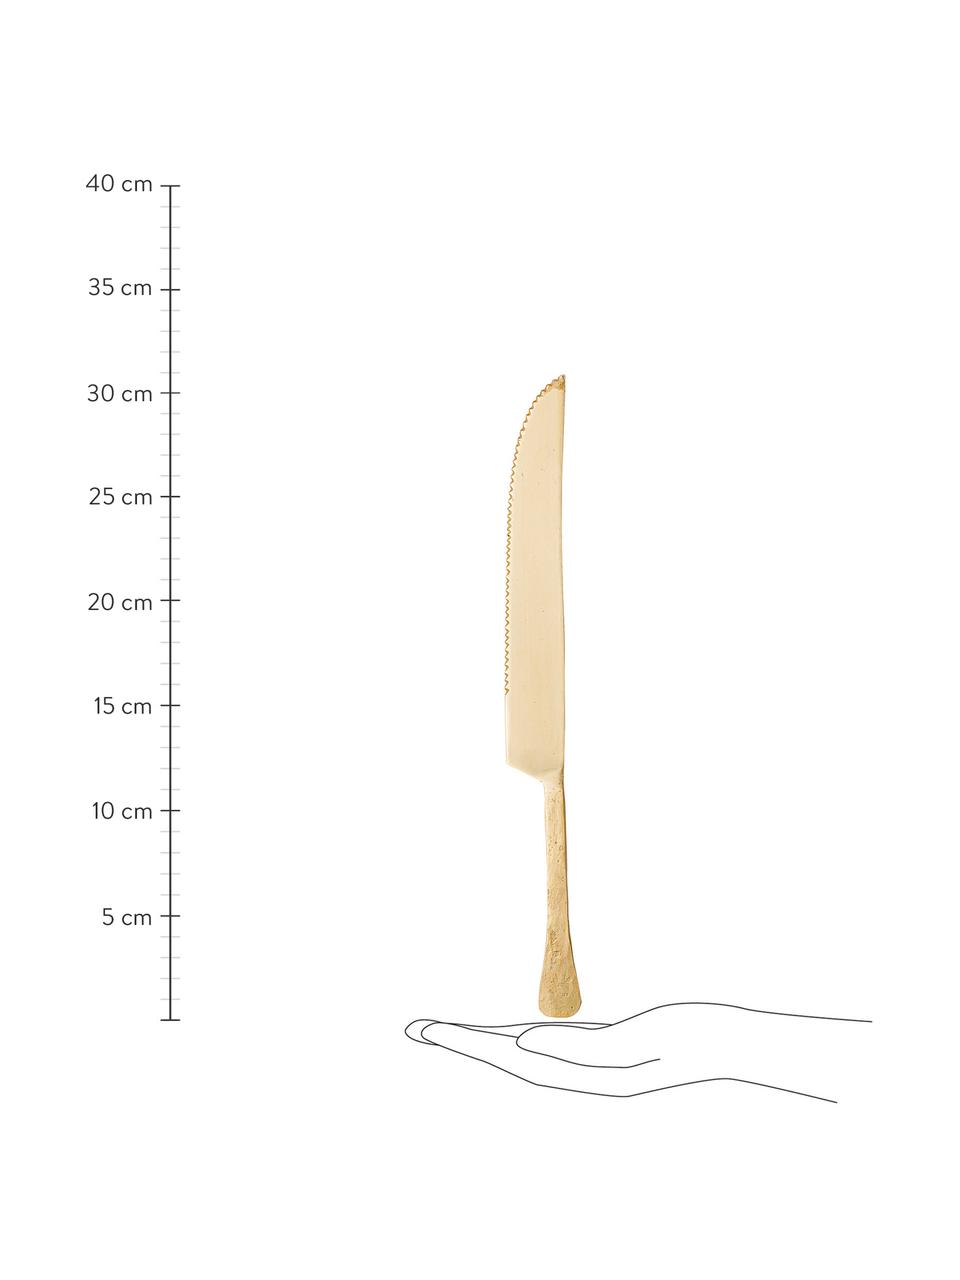 Nóż do ciasta Moni, Stal szlachetna 14/1 lakierowana

Stal szlachetna jest materiałem trwałym, odpornym na korozję oraz posiada właściwości antybakteryjne, Odcienie mosiądzu, D 31 cm